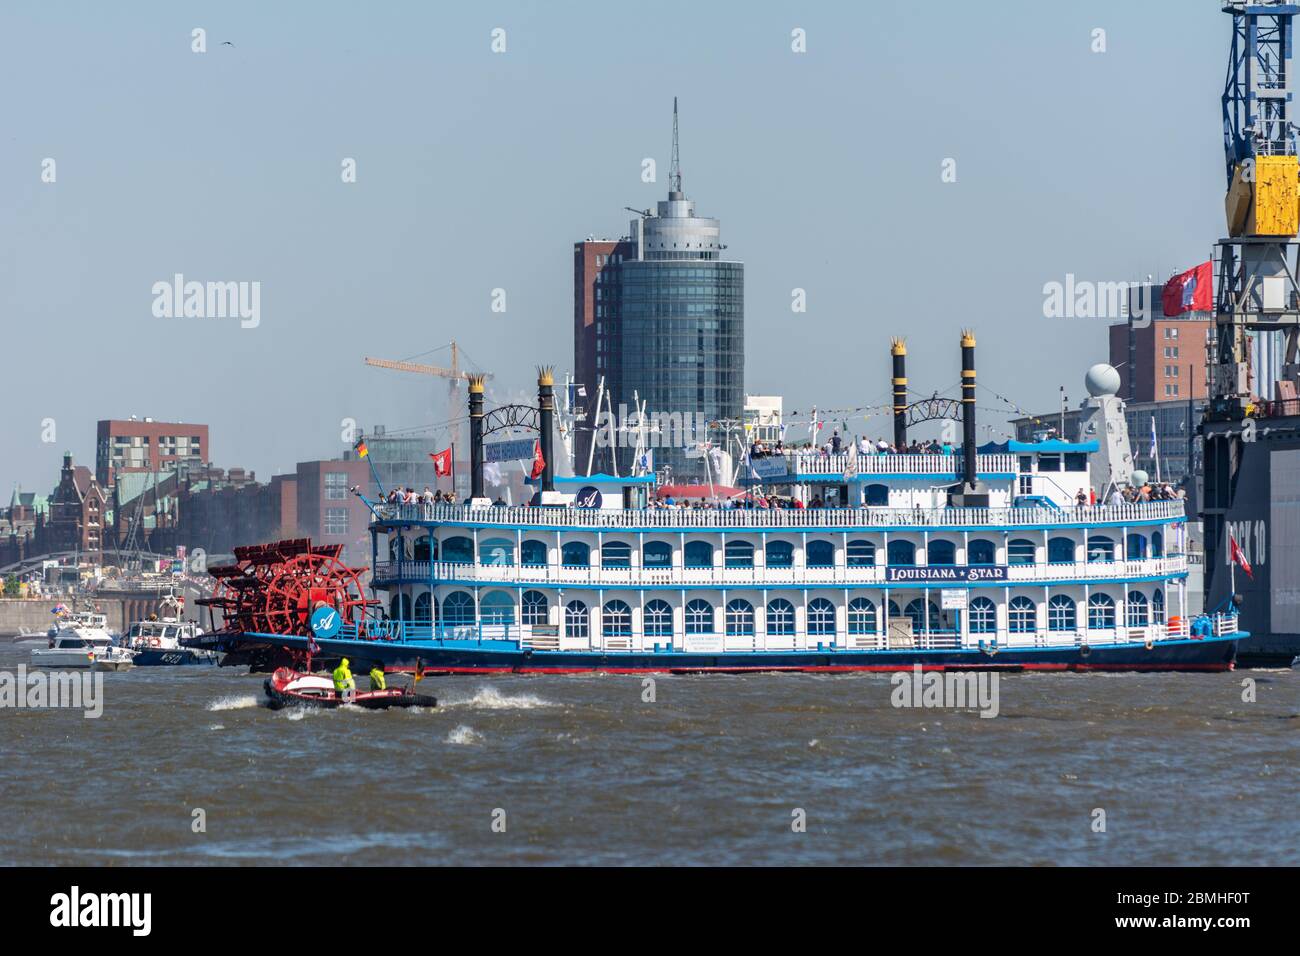 Louisiana Star, Passagierschiff, Heckraddampfer, Hafengeburtstag 2016, Hamburg, 07.05.2016 Stockfoto